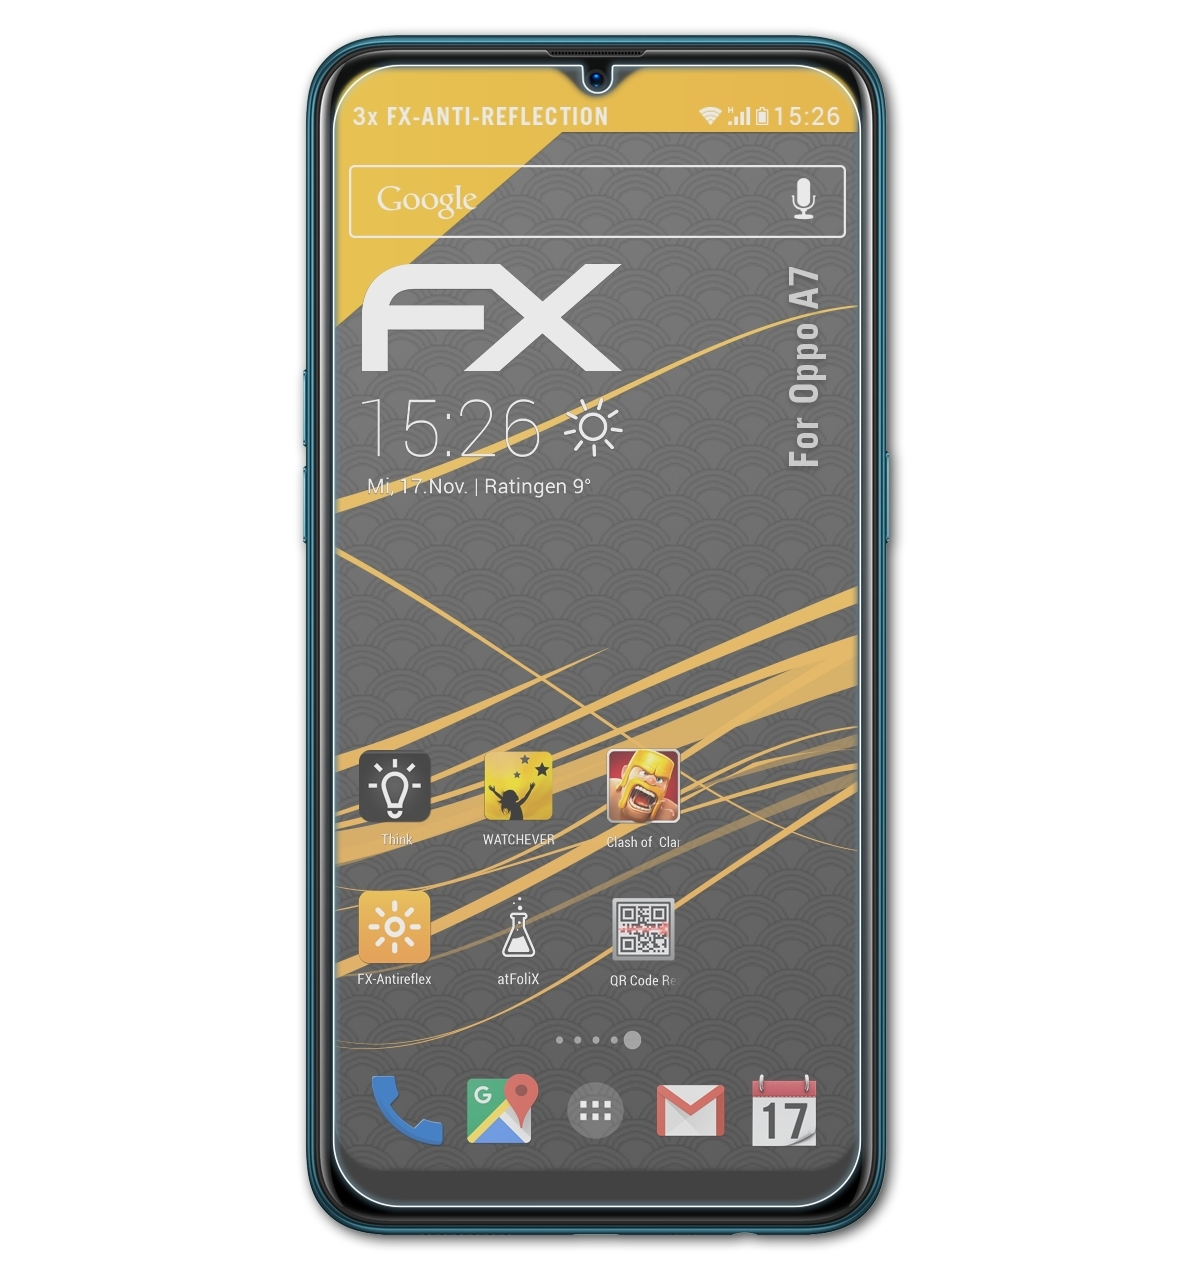 ATFOLIX 3x FX-Antireflex A7) Displayschutz(für Oppo